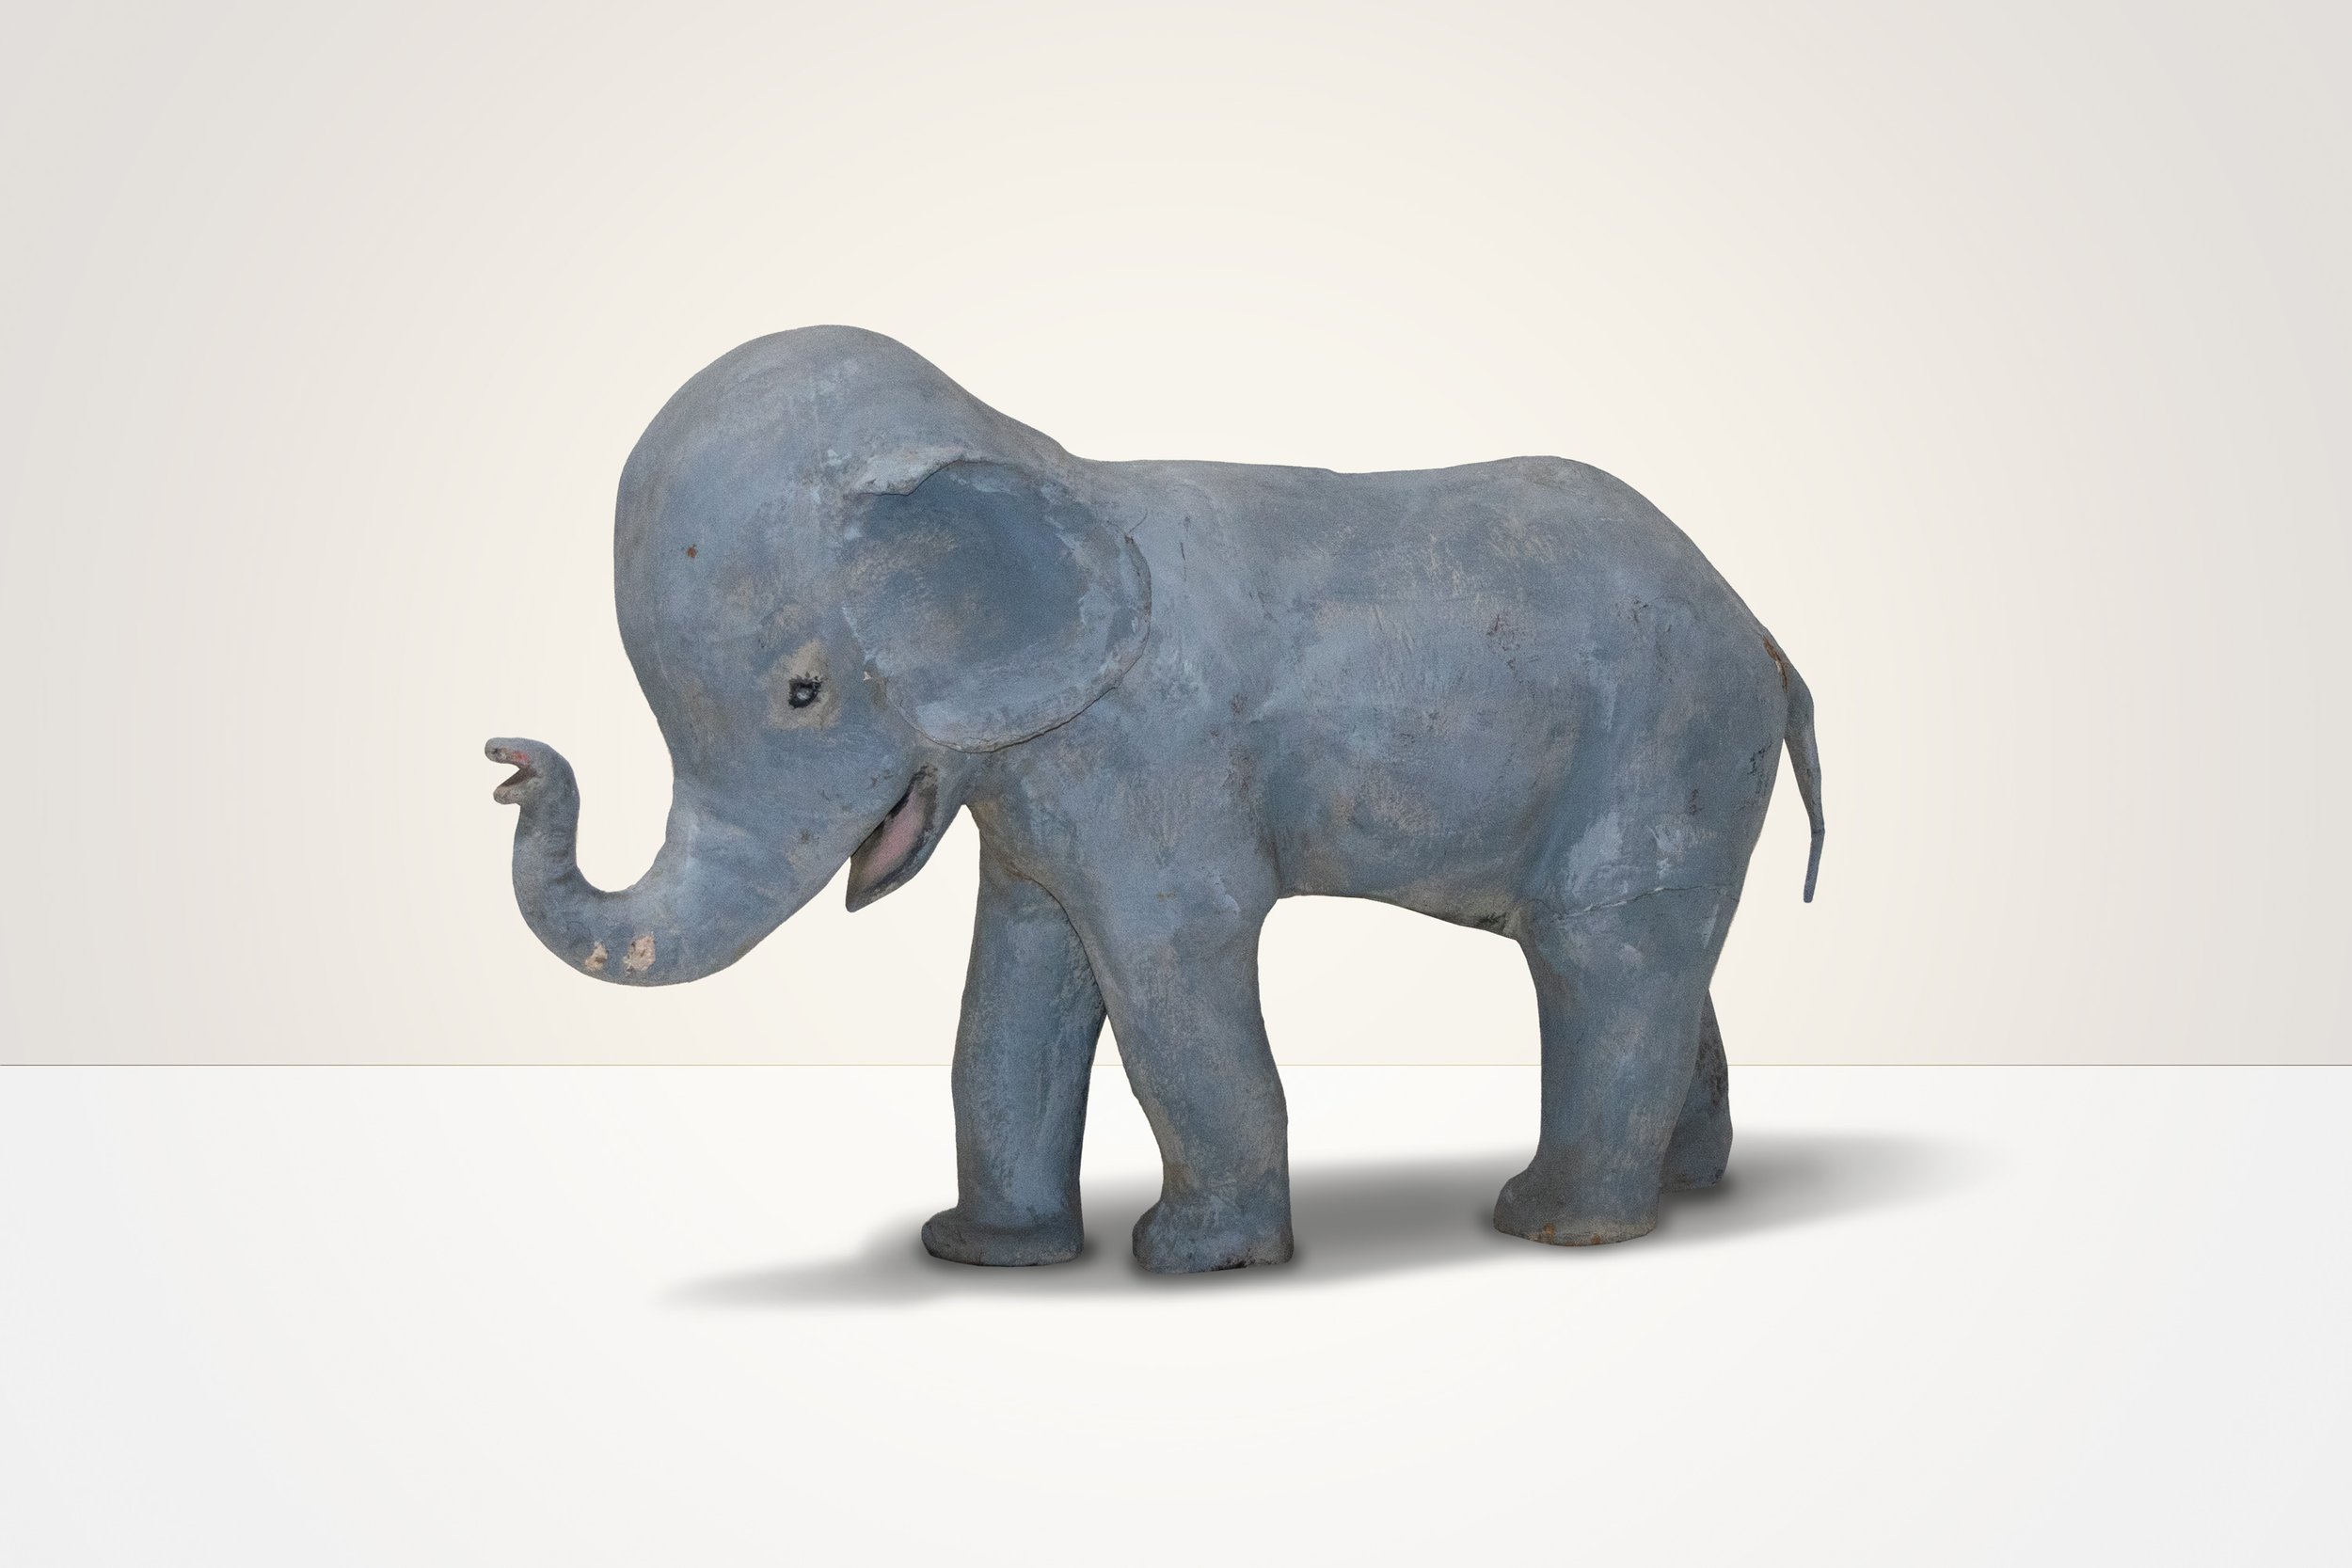 The 3D elephant